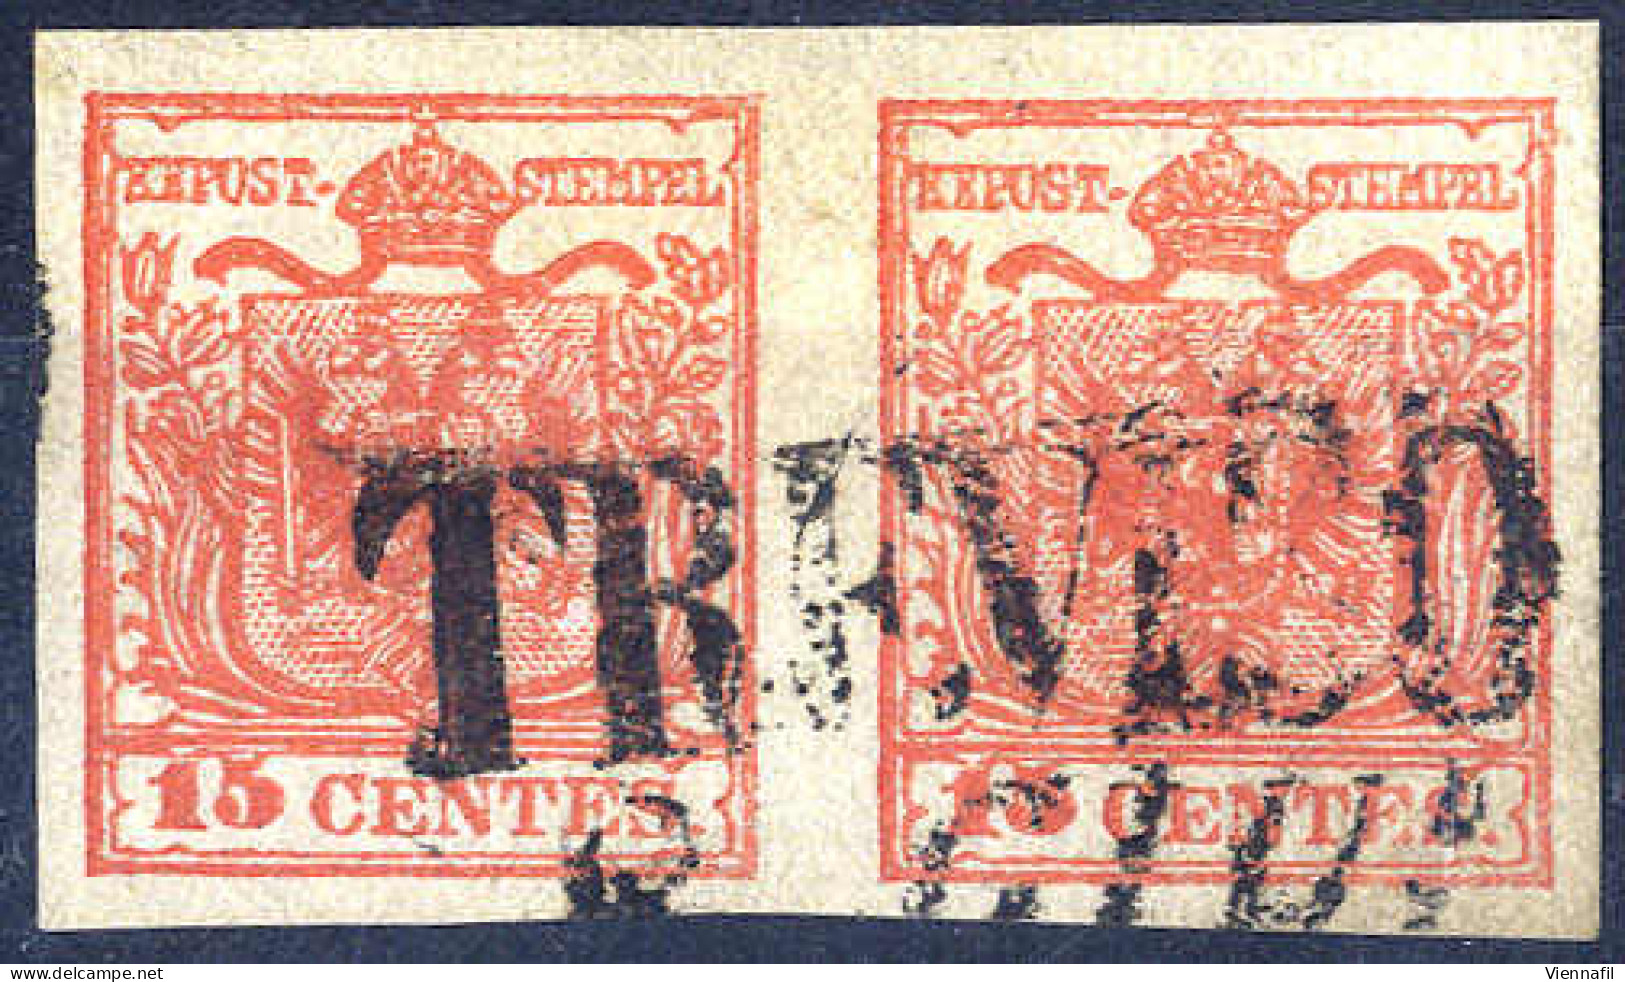 O 1850, 15 Cent. Rosso Vermiglio, Secondo Tipo, Coppia Orizzontale Da Treviso, Splendida E Non Comune, Cert. Zanini (Sas - Lombardo-Venetien